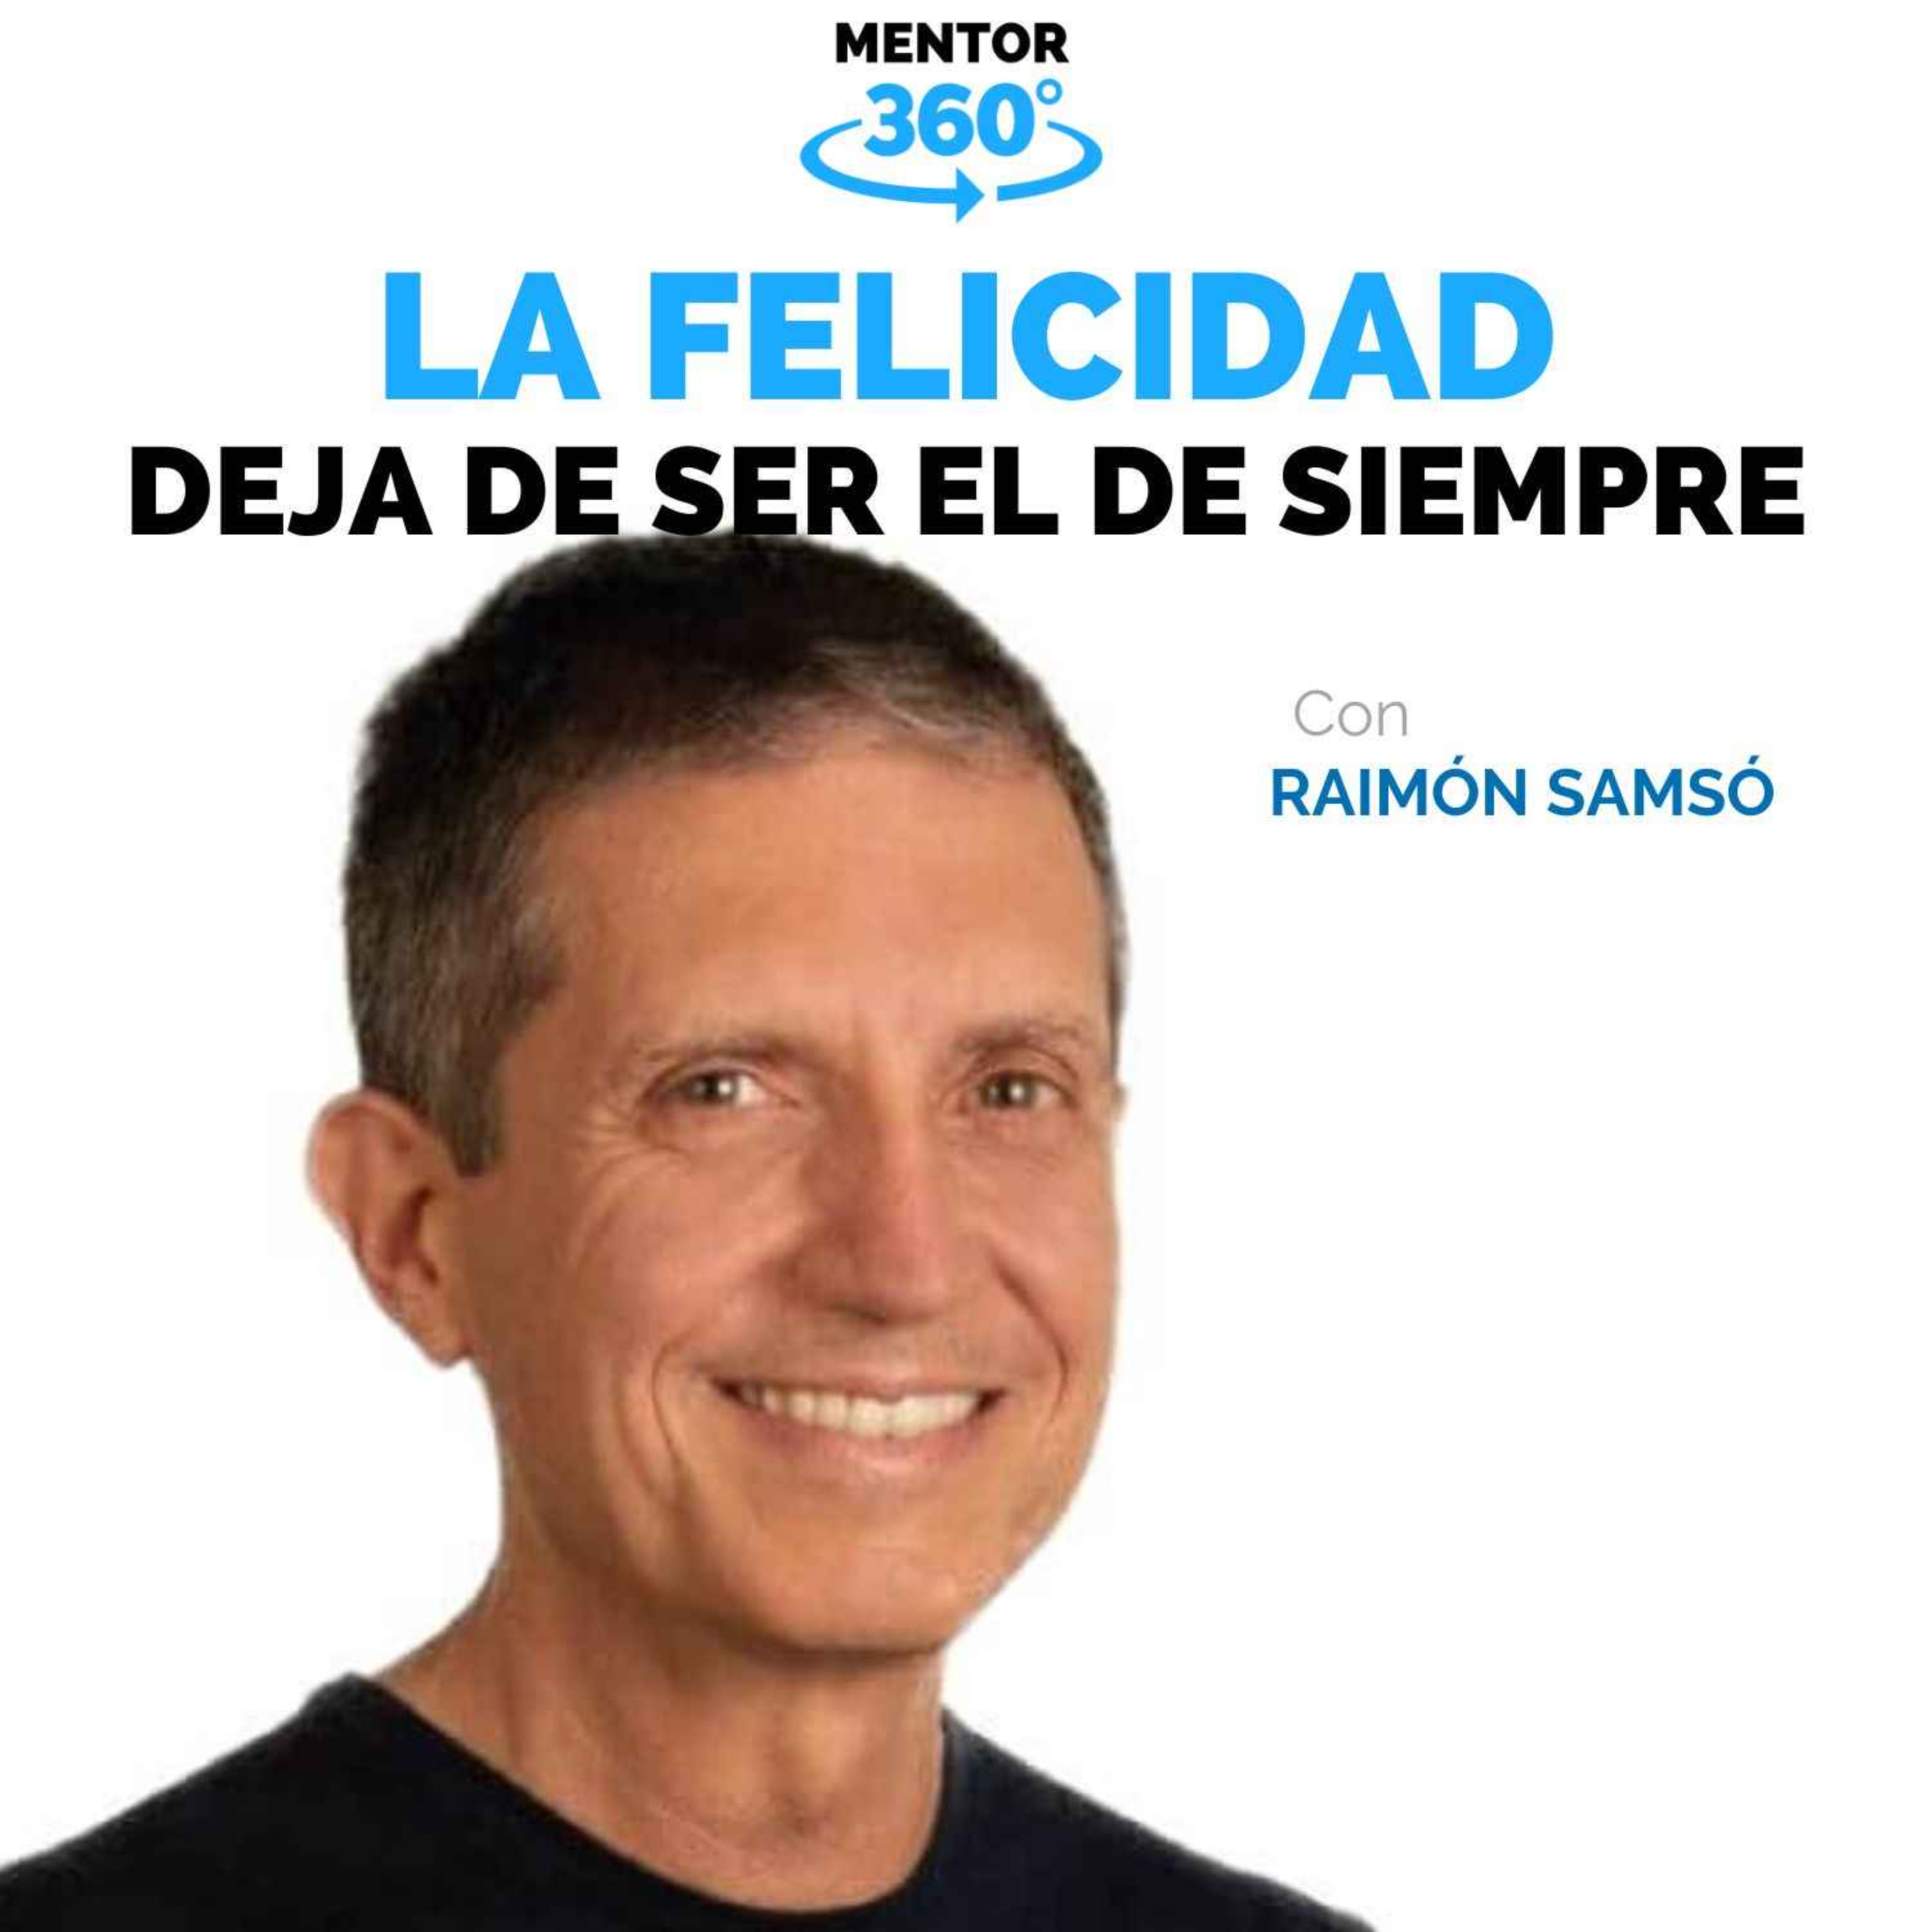 Deja De Ser El De Siempre - Raimón Samsó - La Búsqueda de la Felicidad - MENTOR360